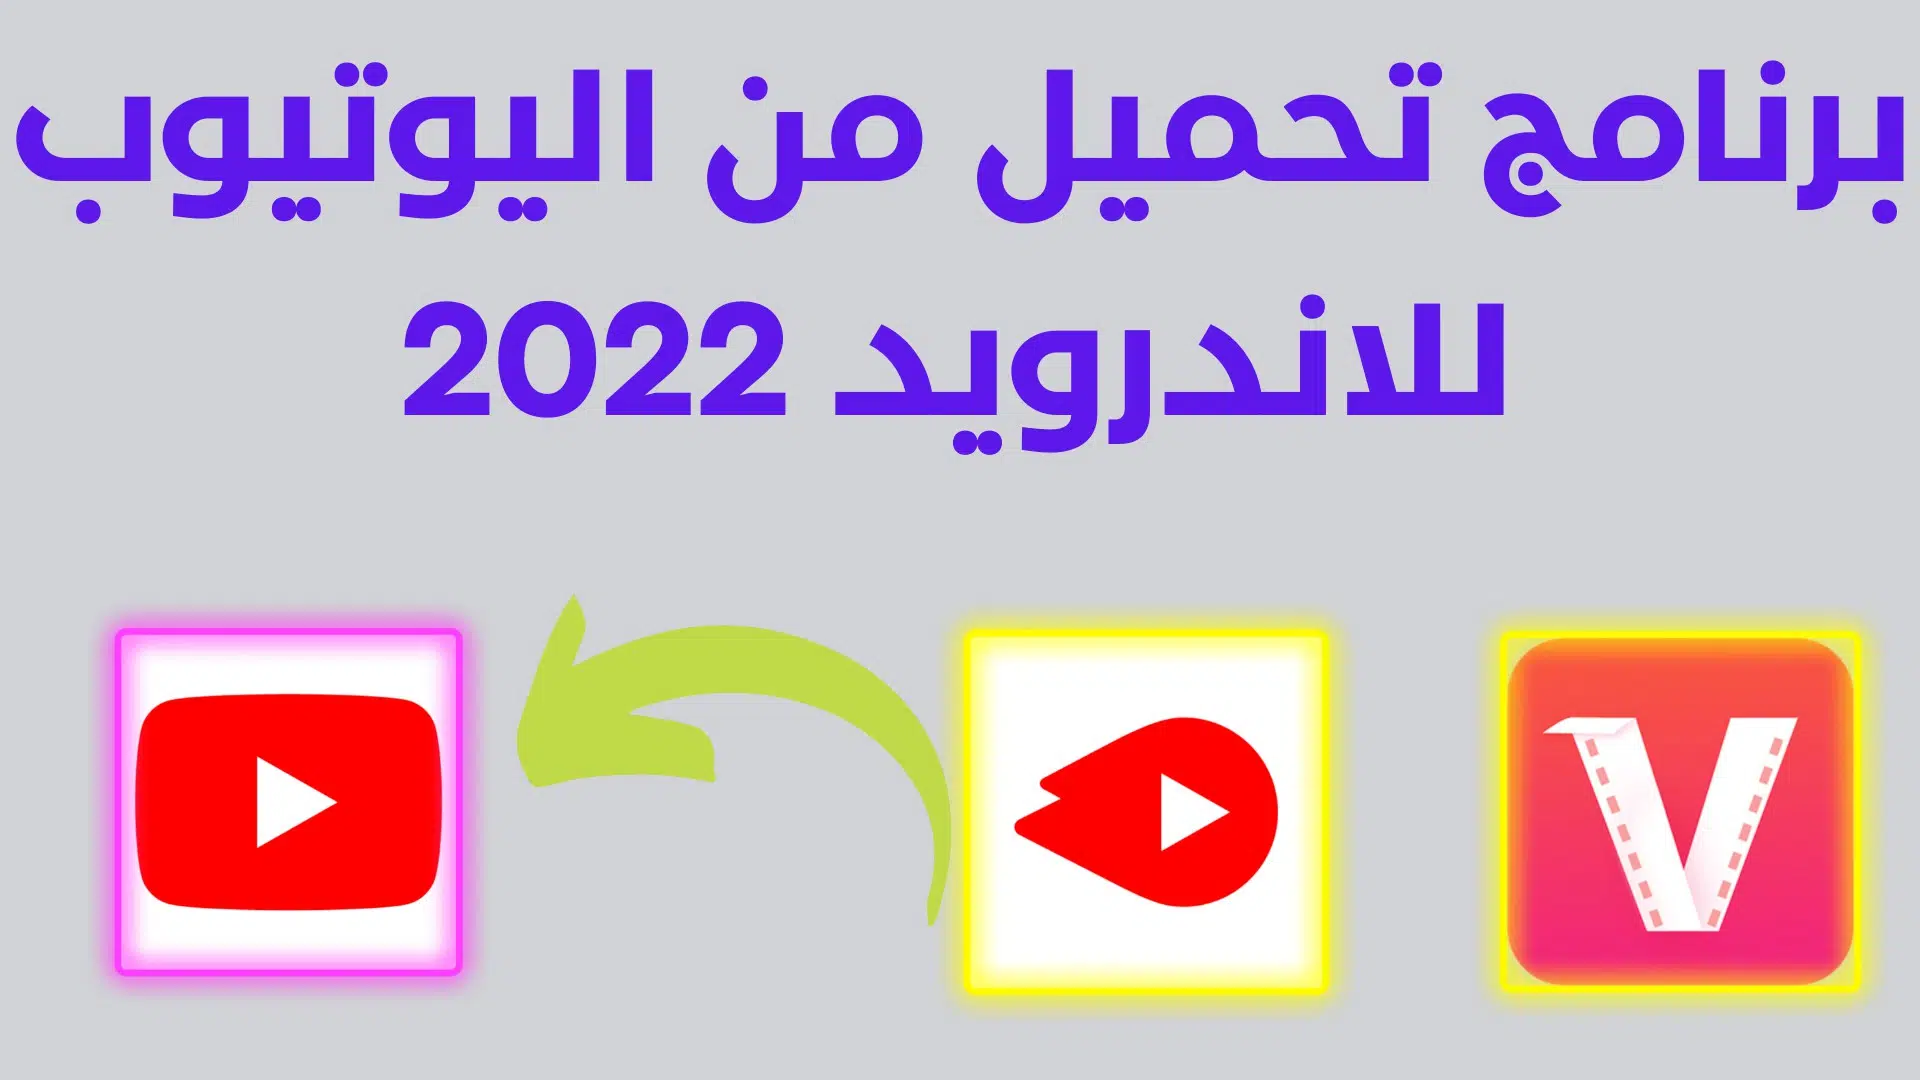 برنامج تحميل من اليوتيوب للاندرويد مجانا 2022